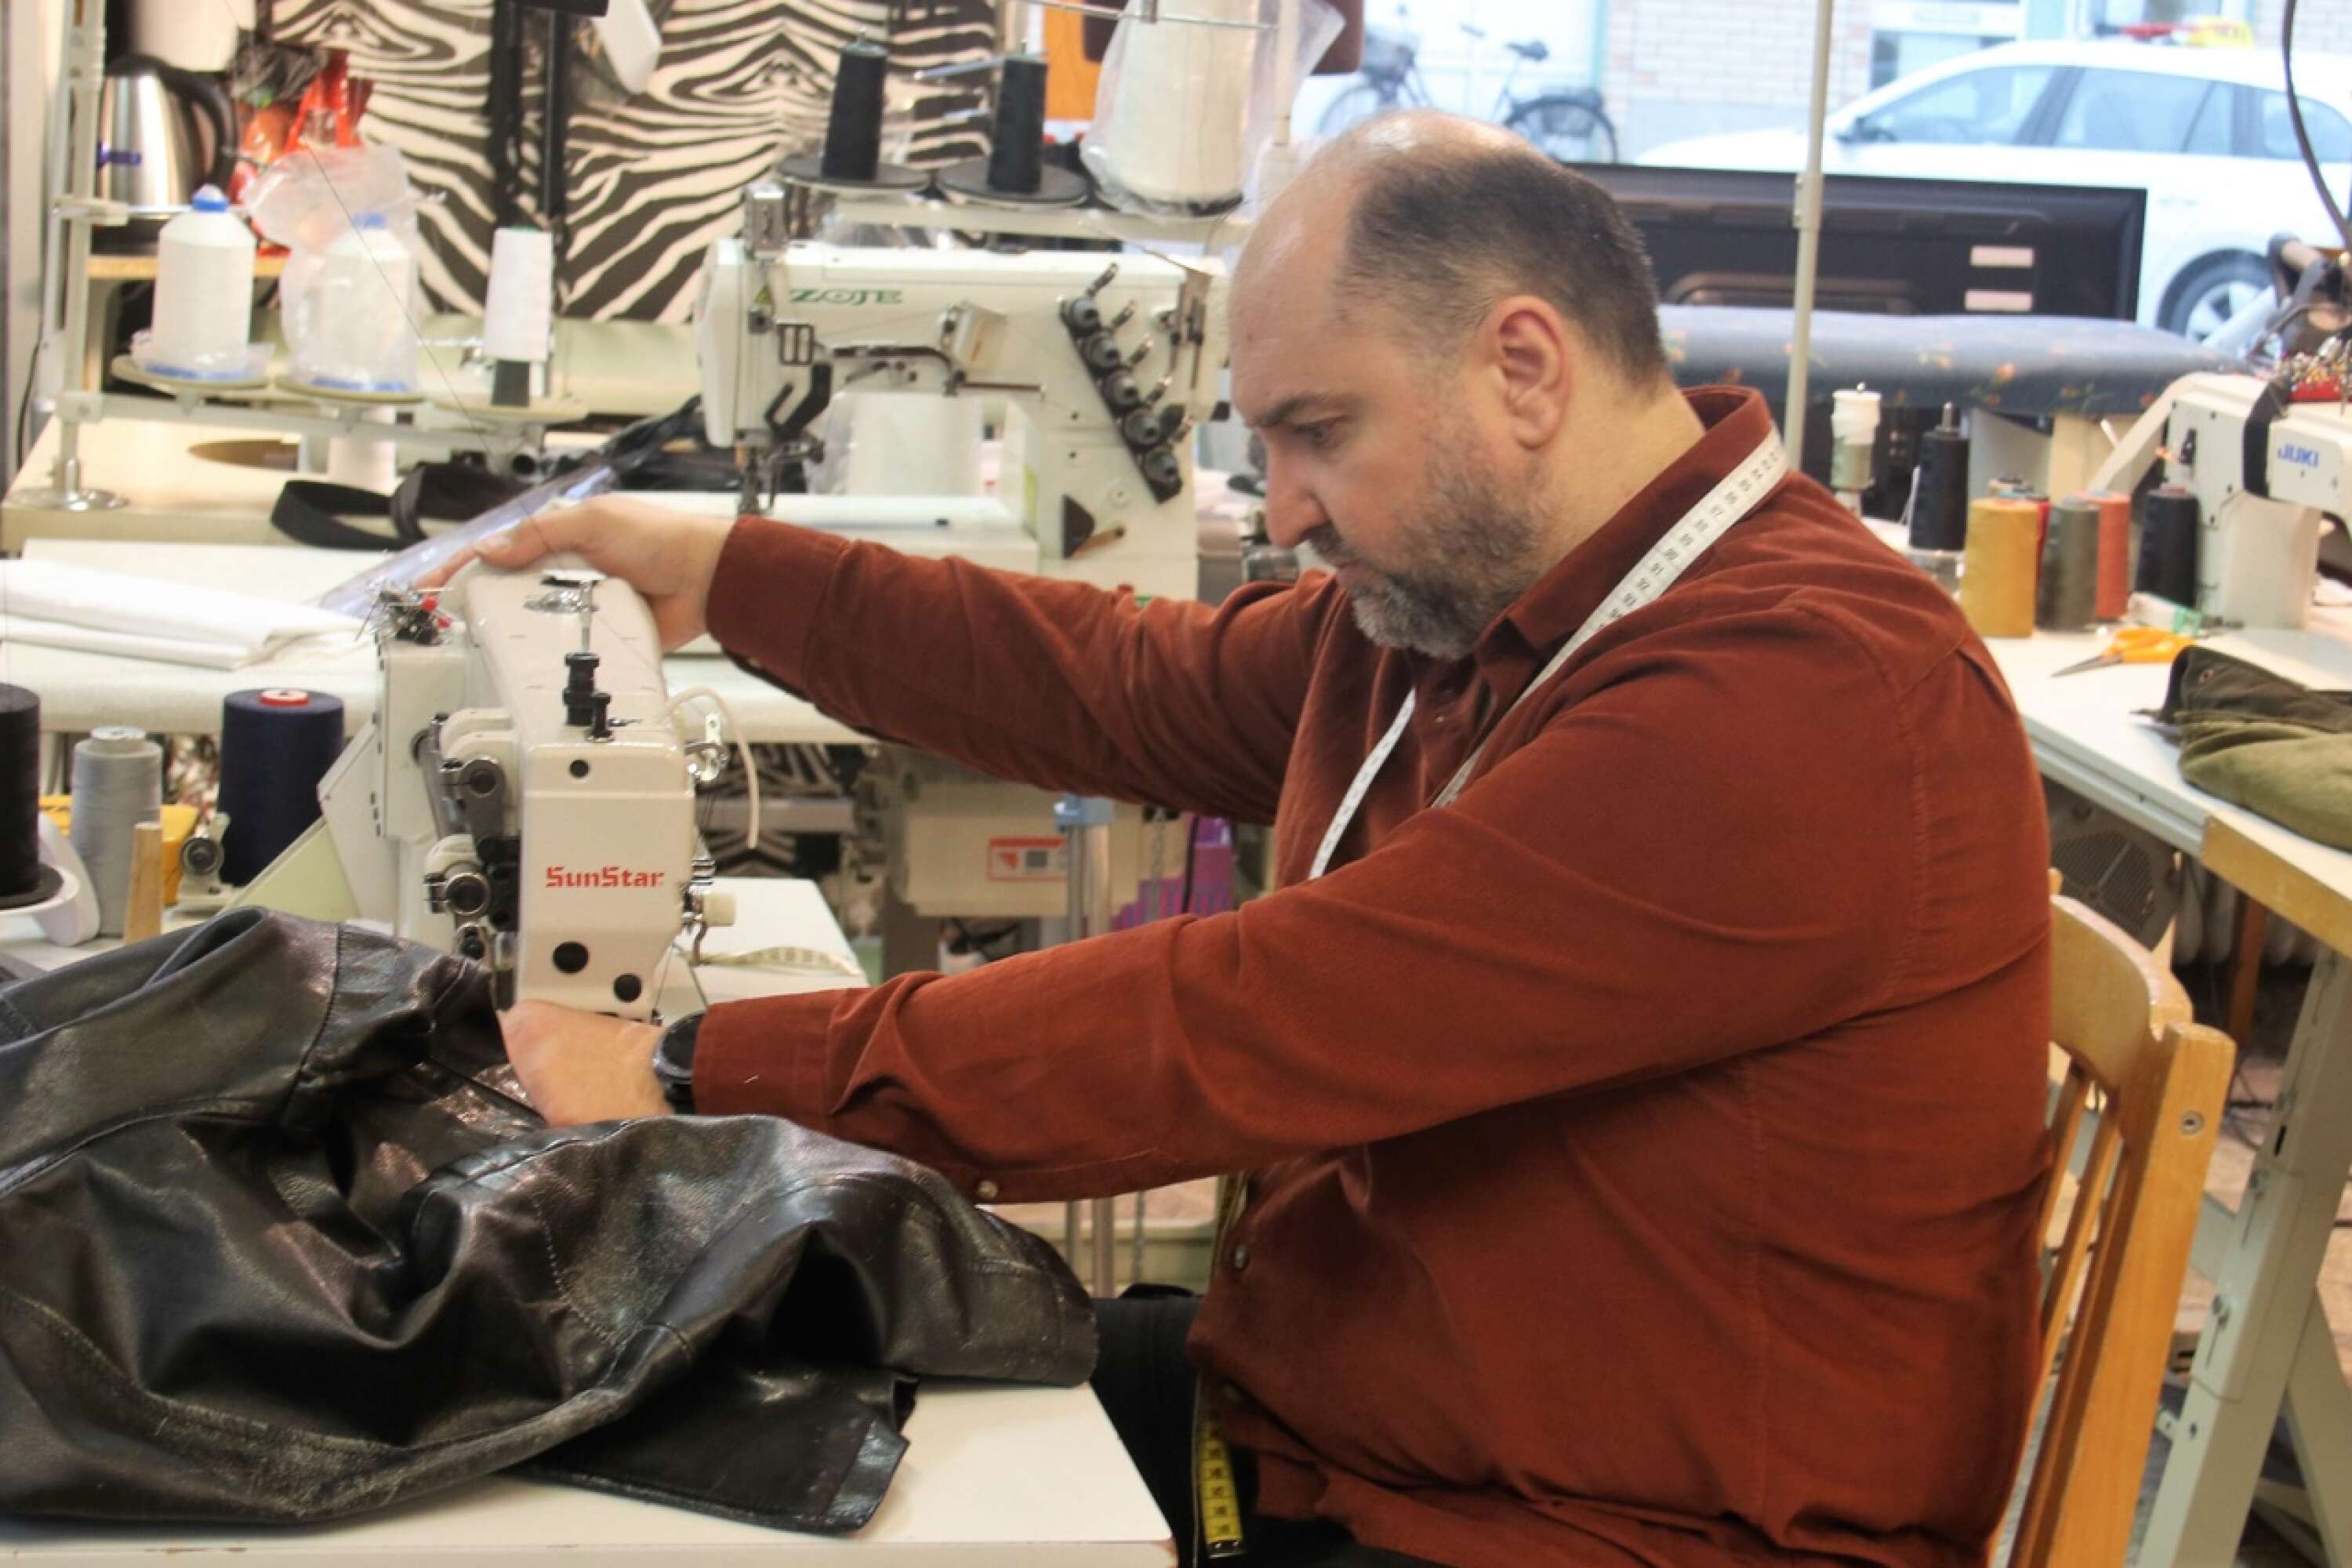 Ahmad Nana har tillgång till kraftfullare symaskiner än de som oftast finns i hemmen. Här byter han dragkedja på en skinnjacka.